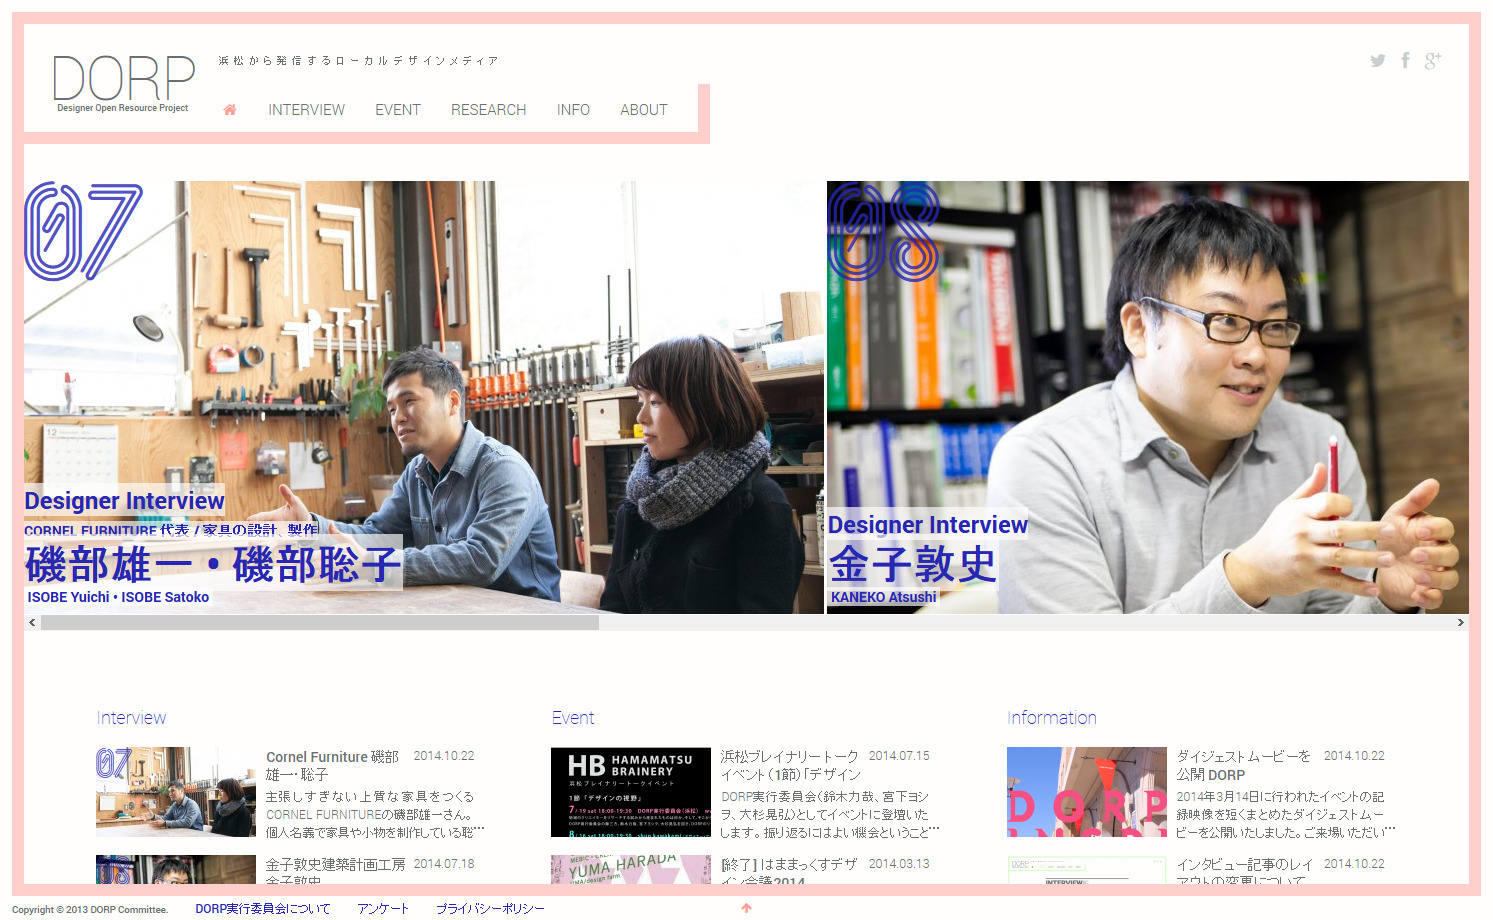 デザイナー・オープンリソースプロジェクト“DORP” - 浜松に潜むデザインの力